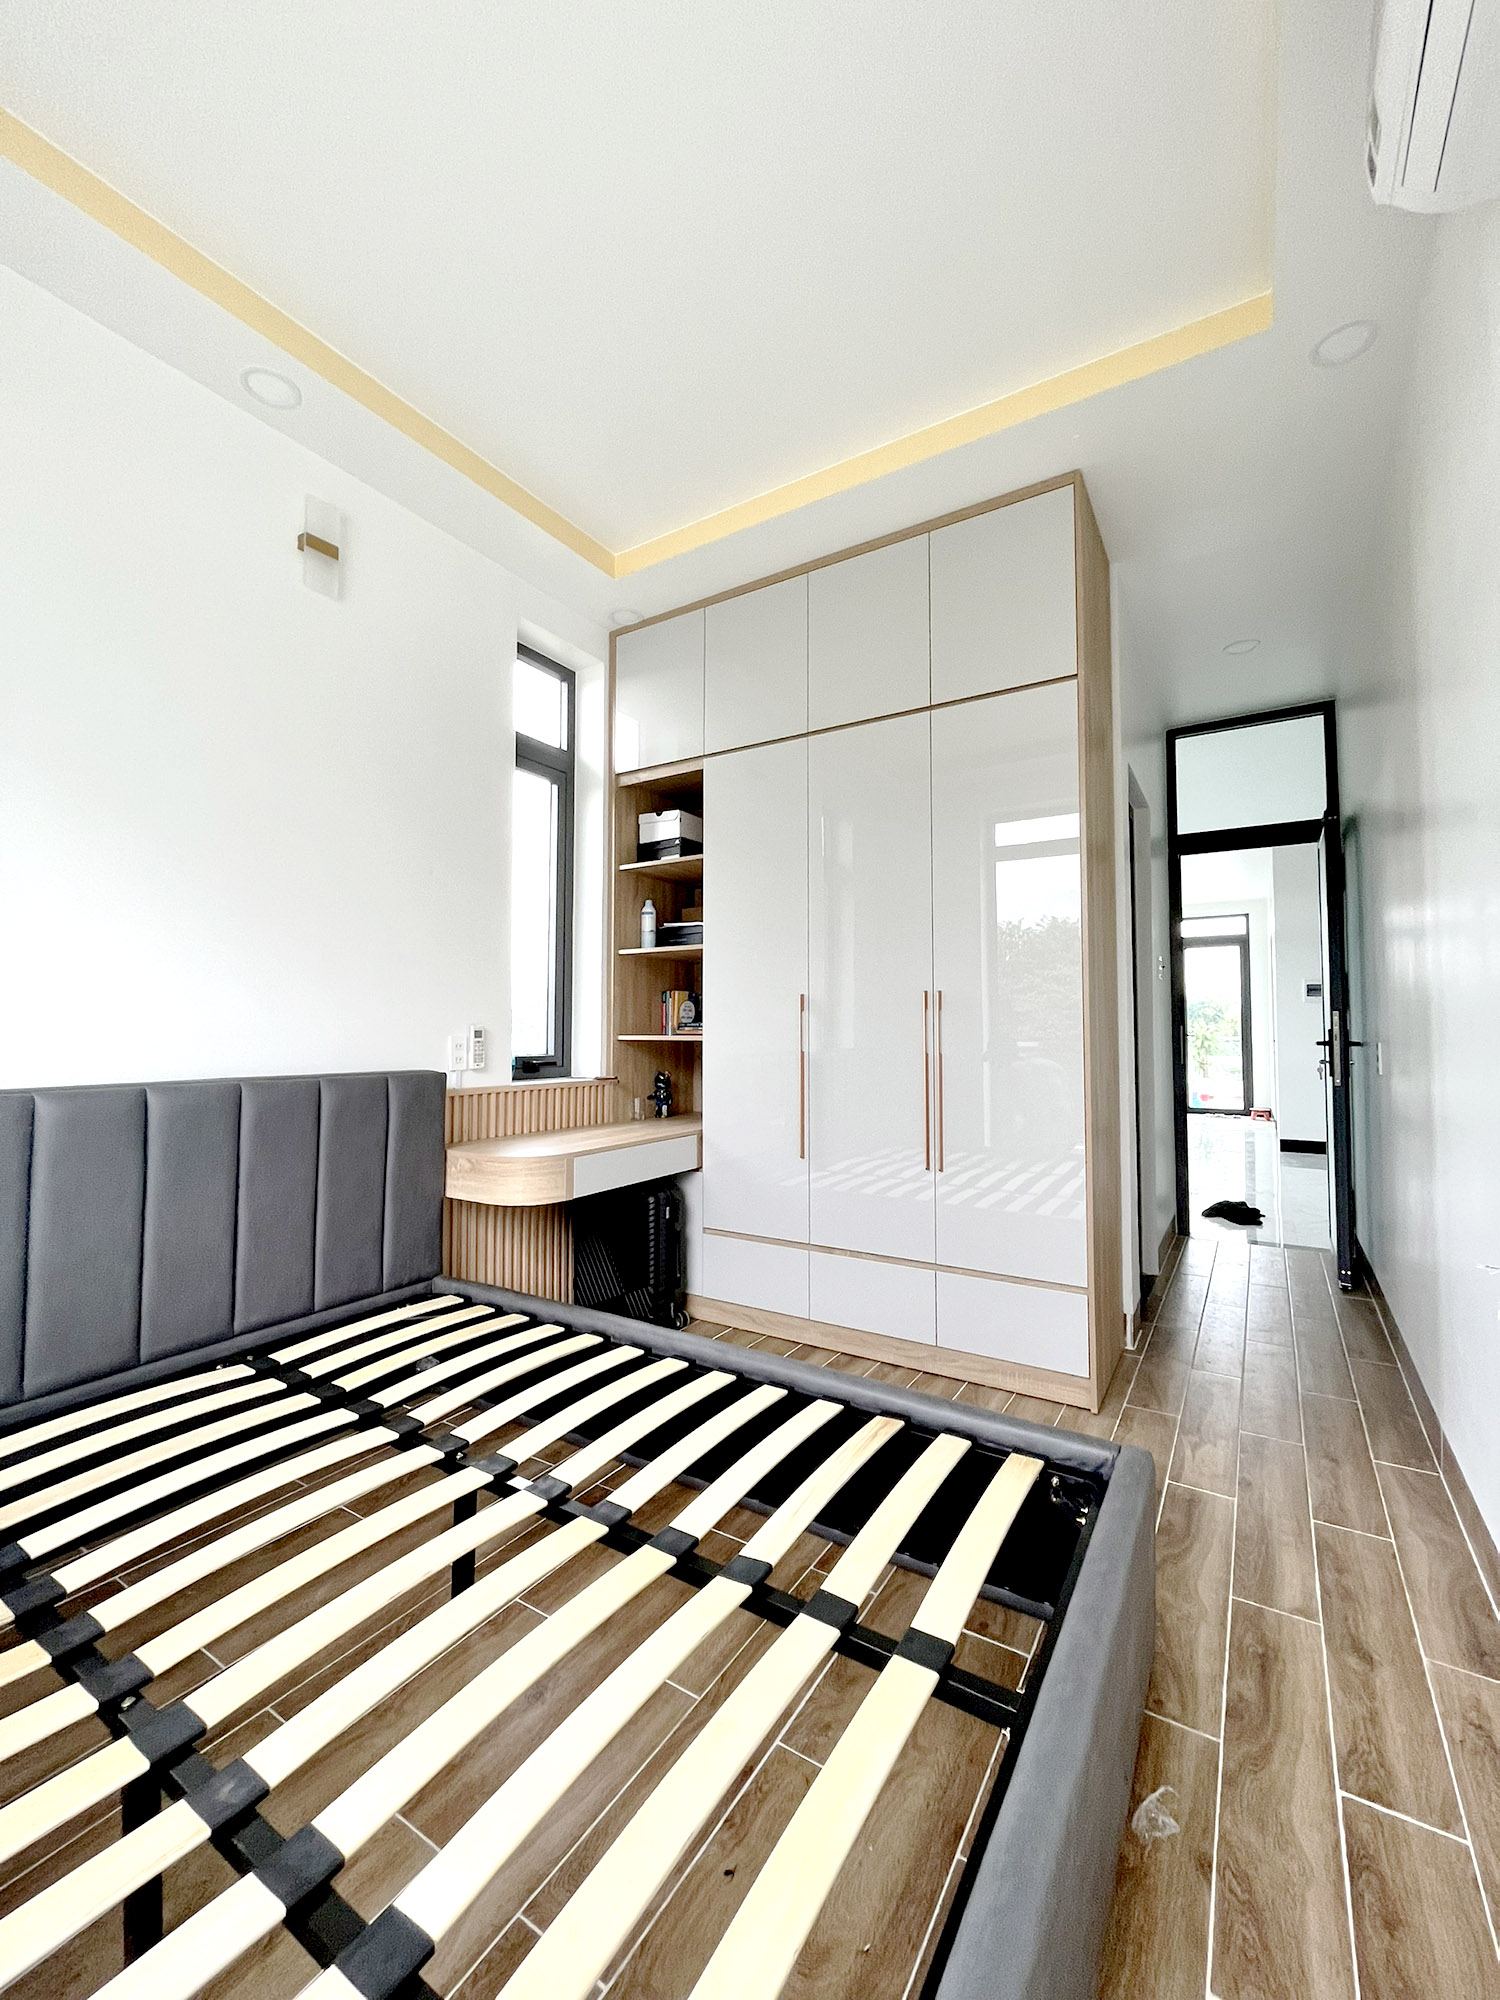 Hoàn thiện nội thất phòng ngủ tầng trệt Nhà phố Đồng Nai phong cách Hiện đại Modern, phong cách Bắc Âu Scandinavian